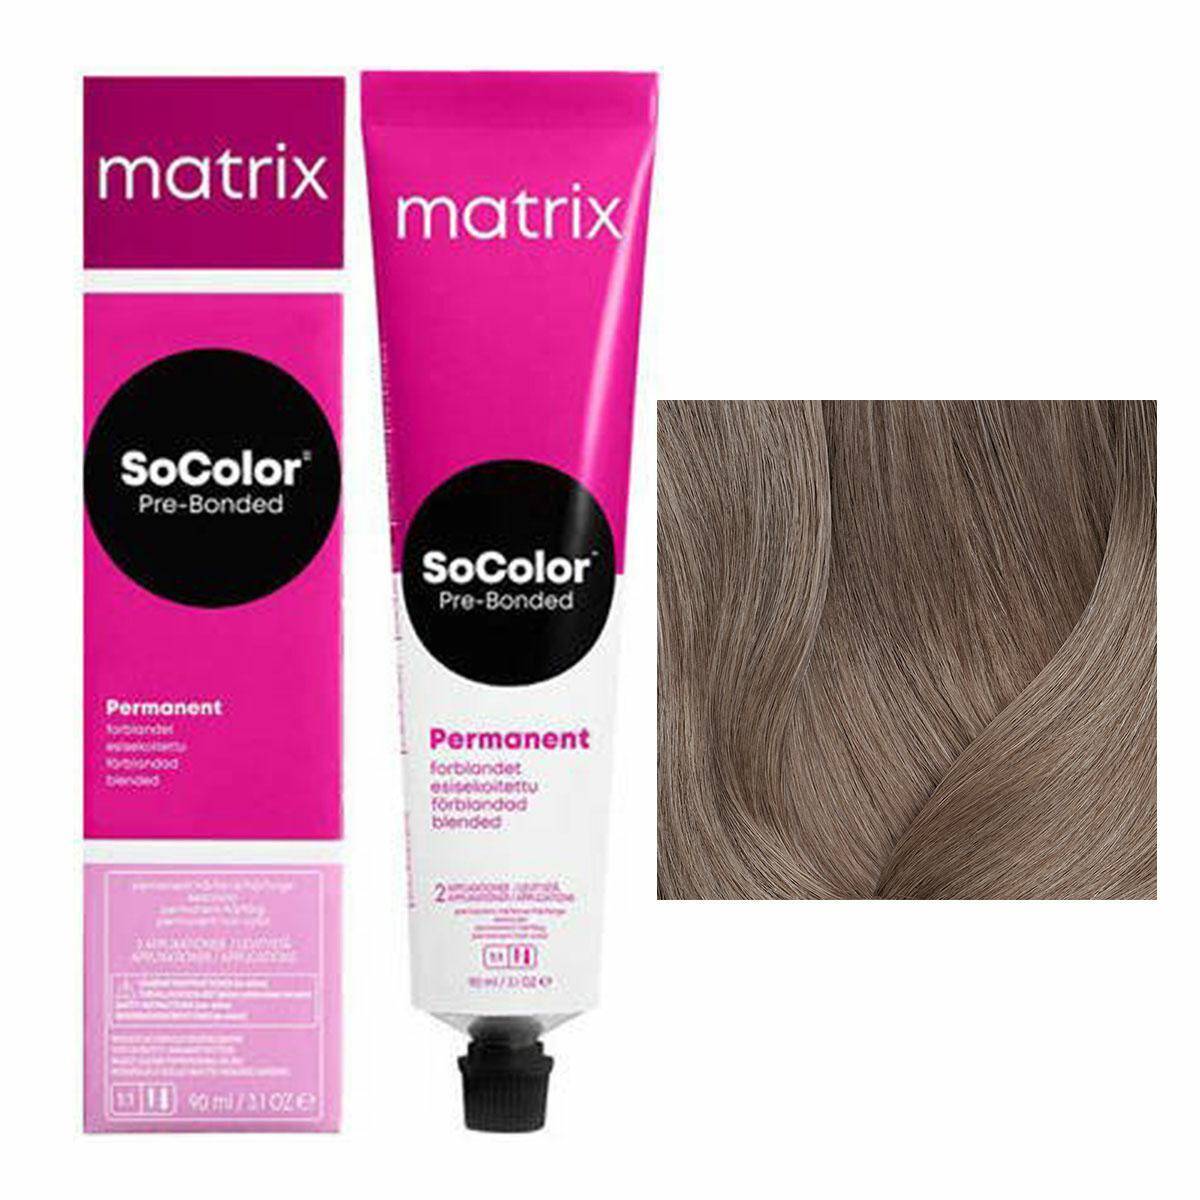 Matrix SoColor Pre-Bonded Farba do włosów - 7N Naturalny blond, trwała koloryzacja 90ml